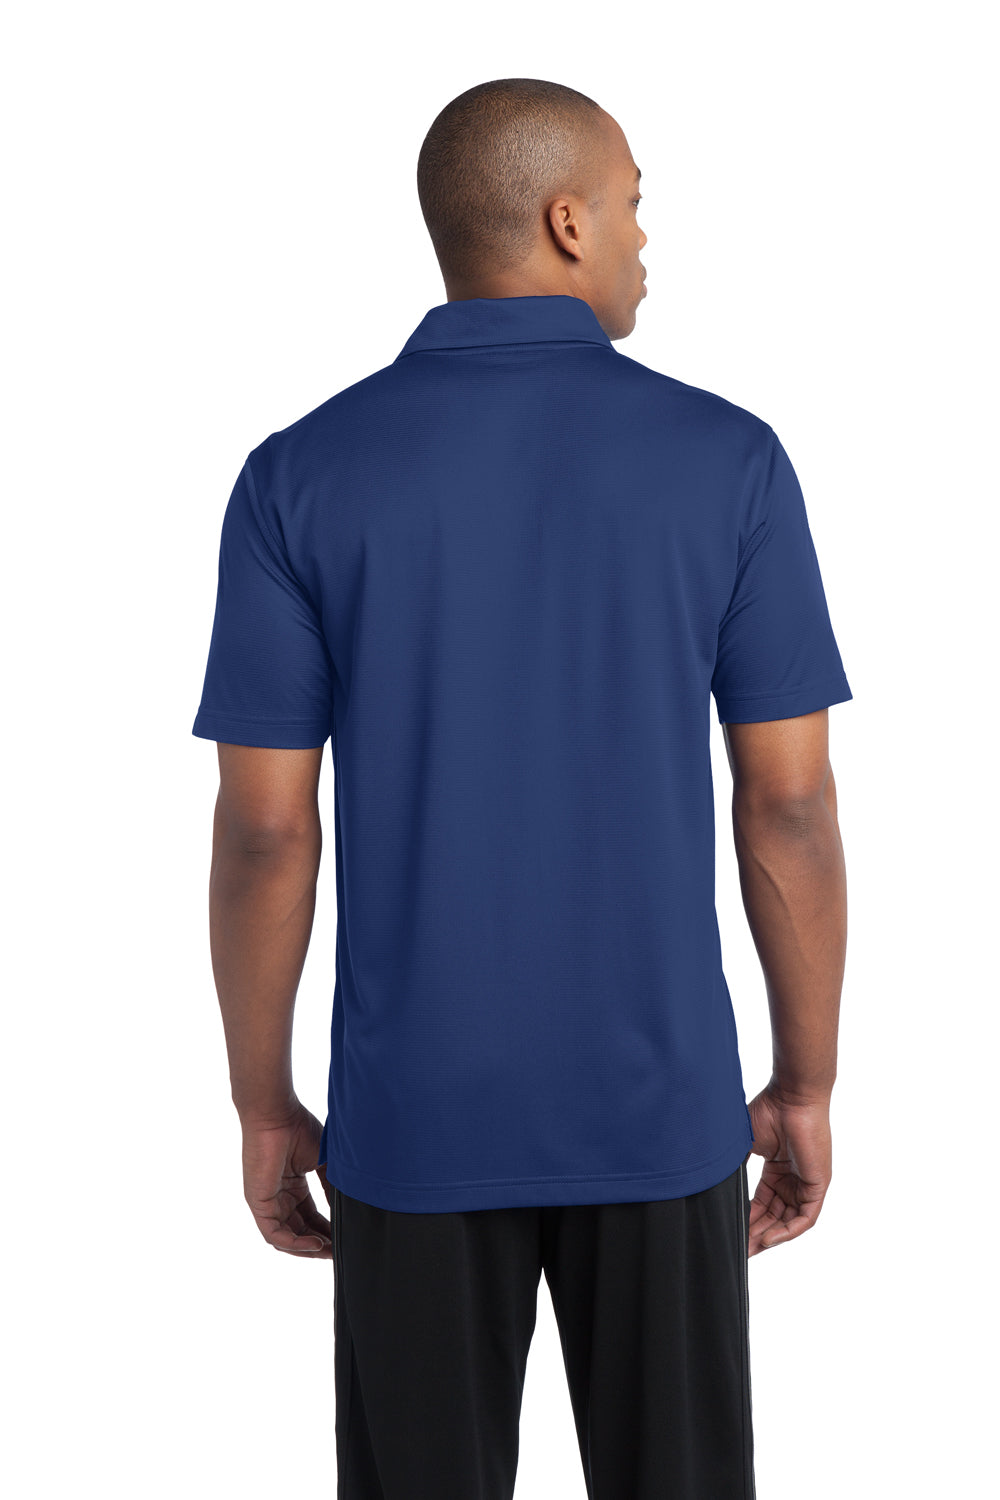 Sport-Tek ST690 Mens Active Mesh Moisture Wicking Short Sleeve Polo Shirt Royal Blue Back